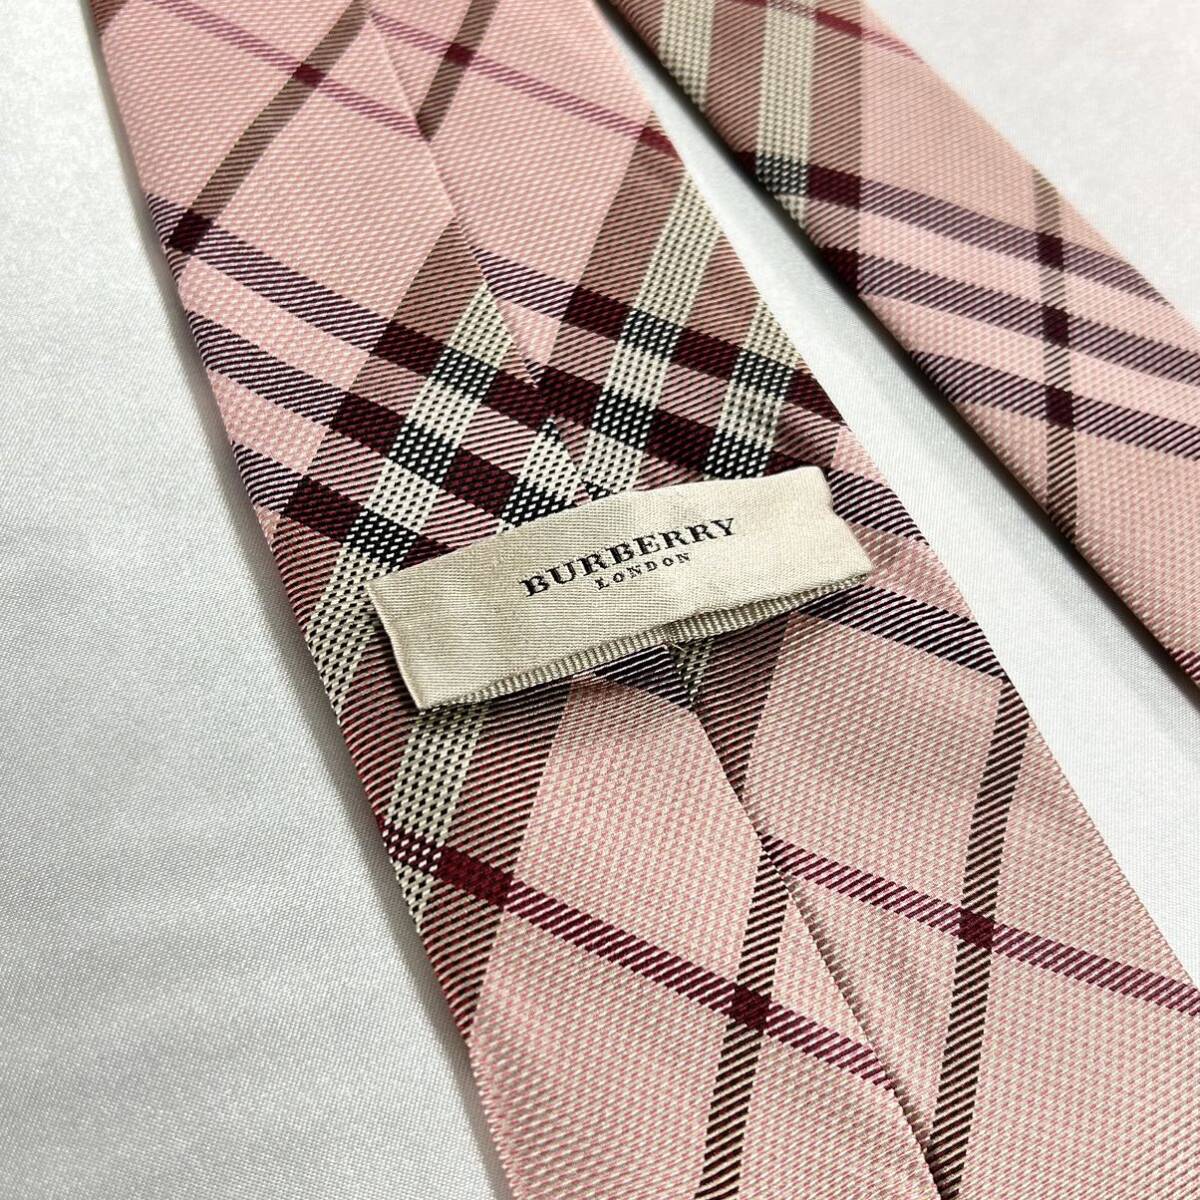  Burberry London проверка шелк галстук Италия производства BURBERRY LONDONnoba проверка бренд . впечатление цвет большой . ширина 9cm бесплатная доставка 